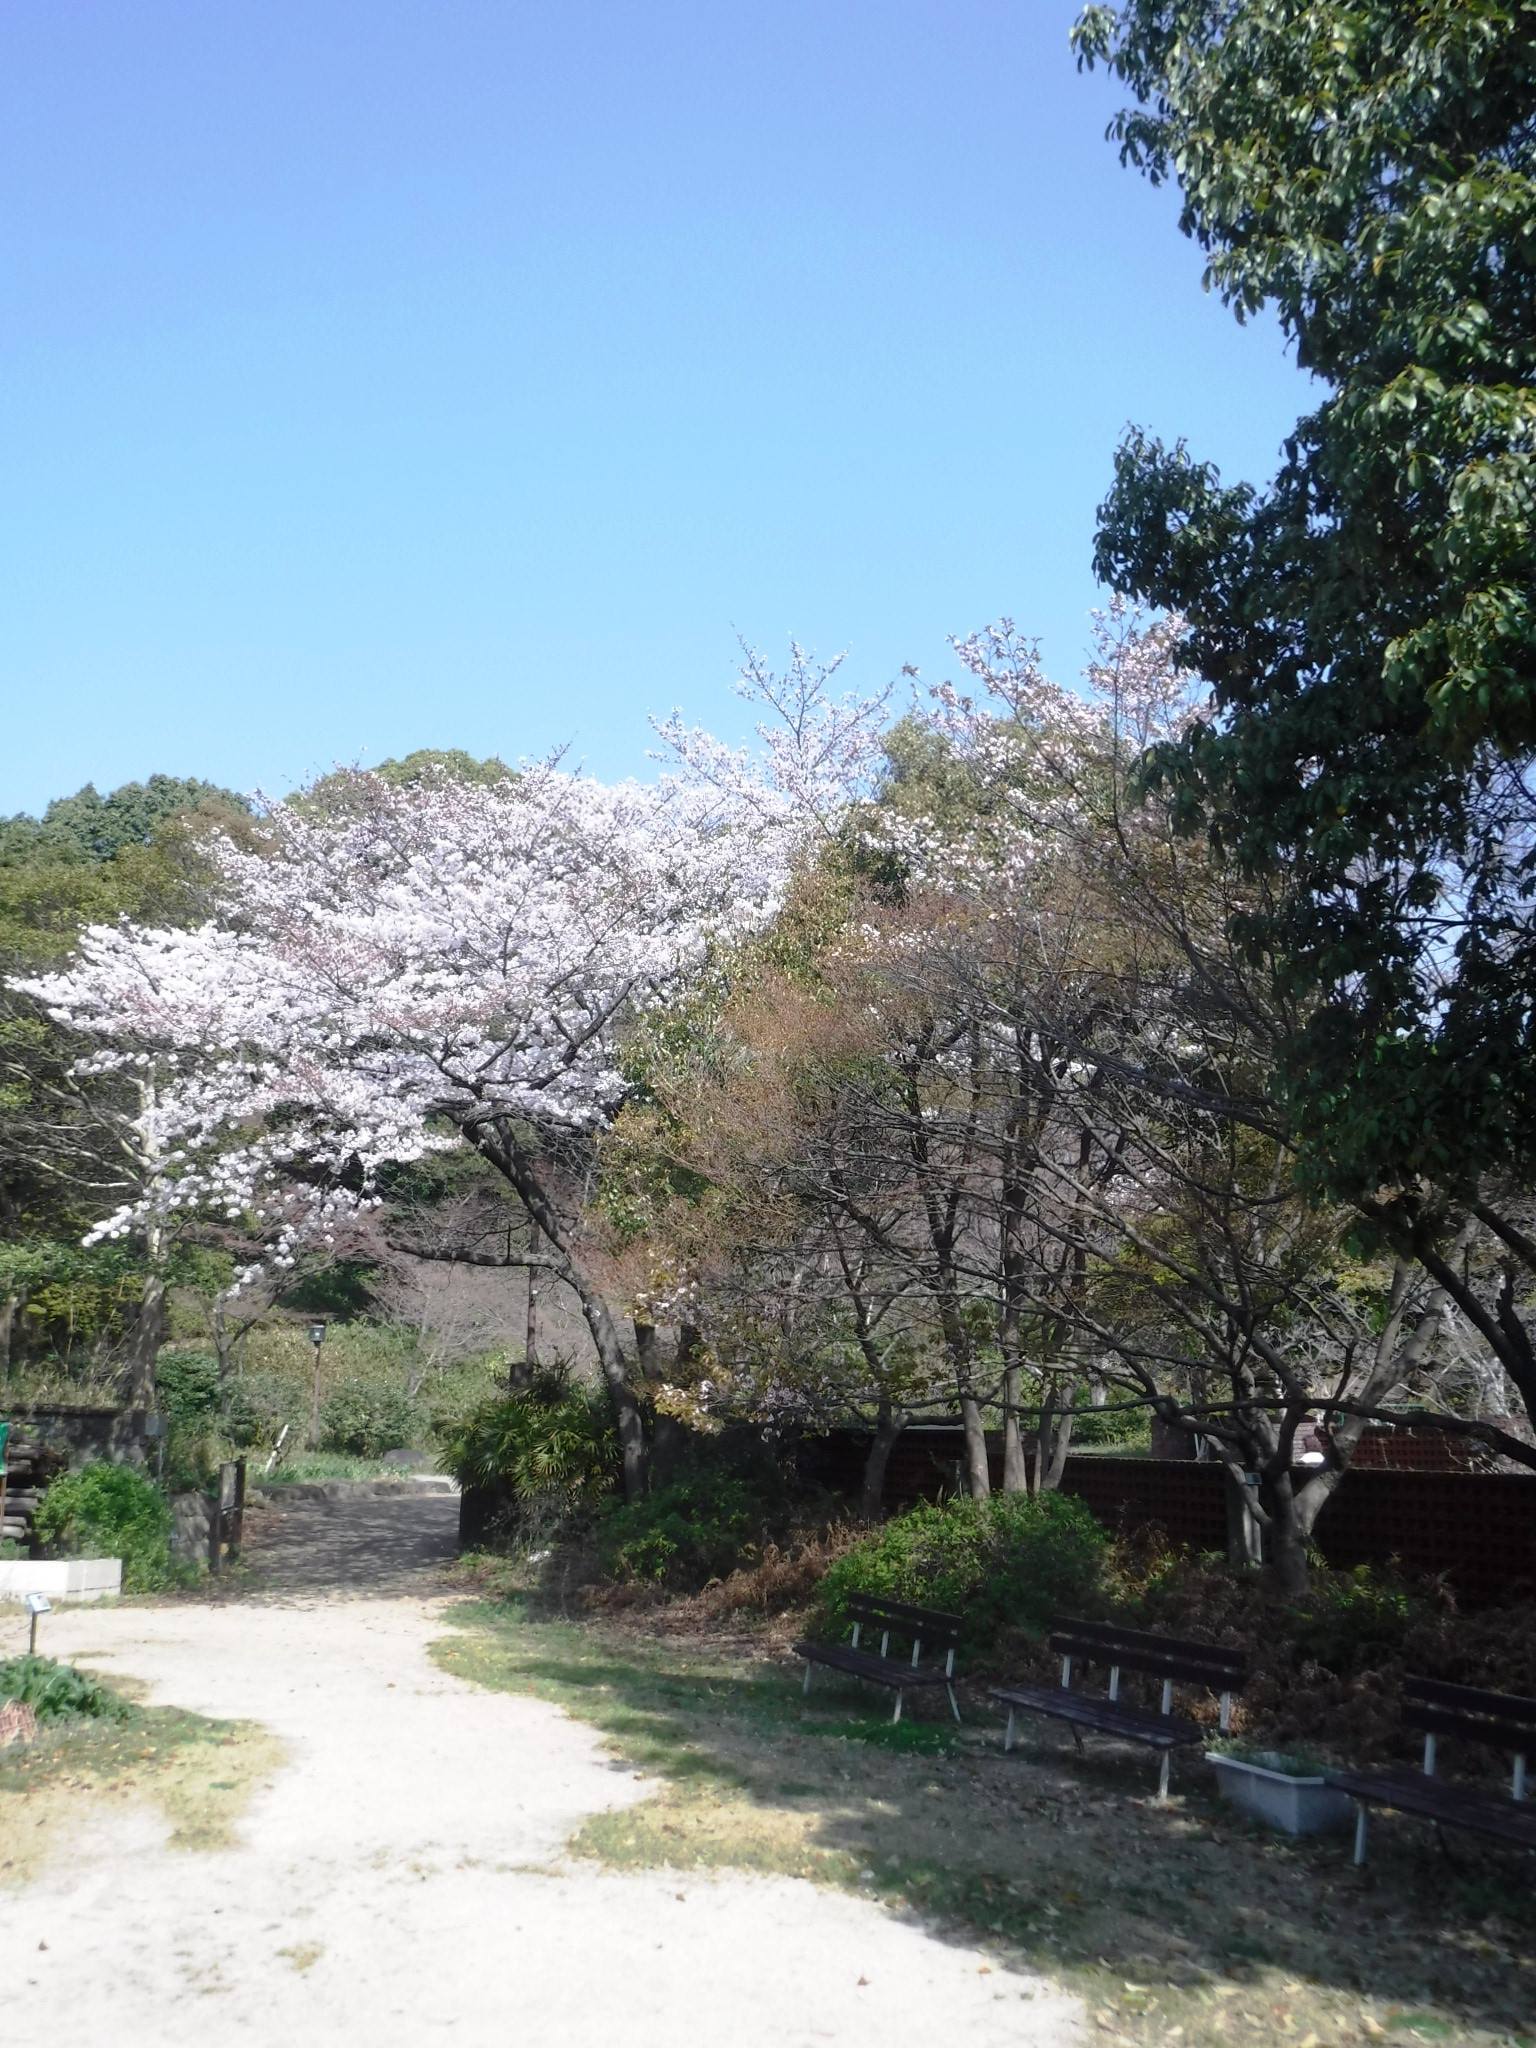 神戸市広報 こちらは須磨離宮公園の桜の様子 T Co D2b3gr1abh T Co Bstvddb2ha Twitter